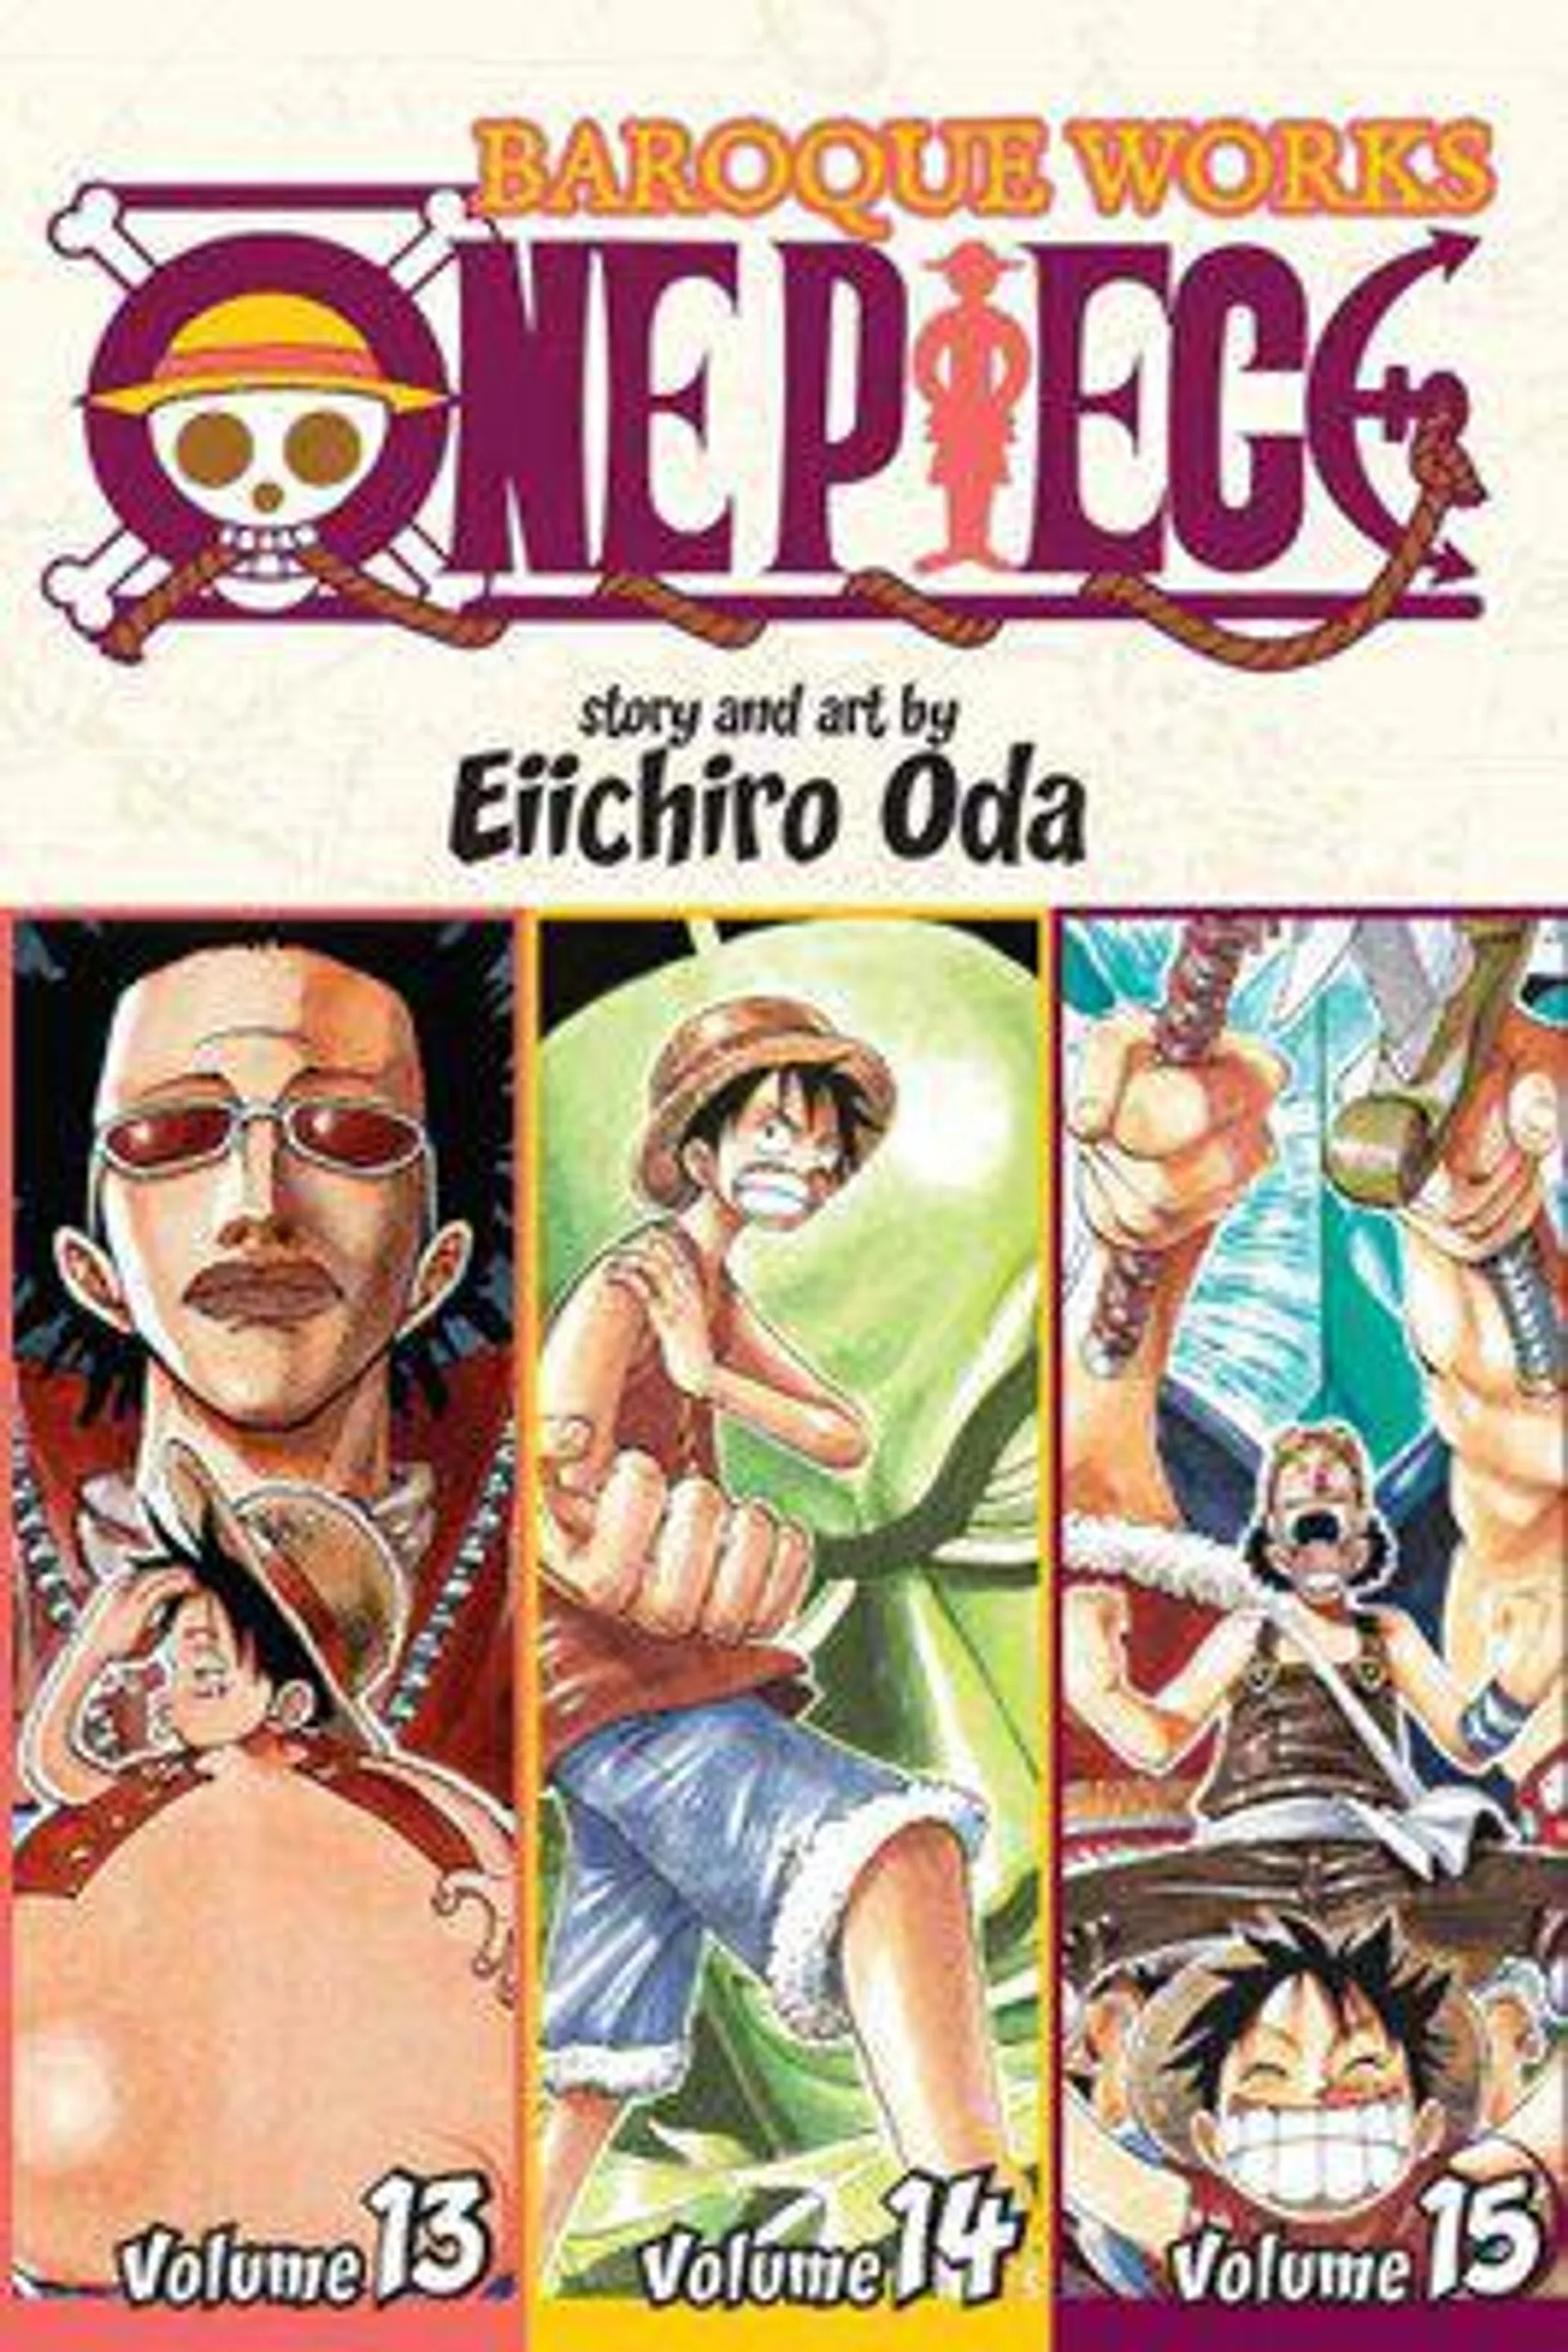 One Piece (Omnibus Edition), Vol. 5